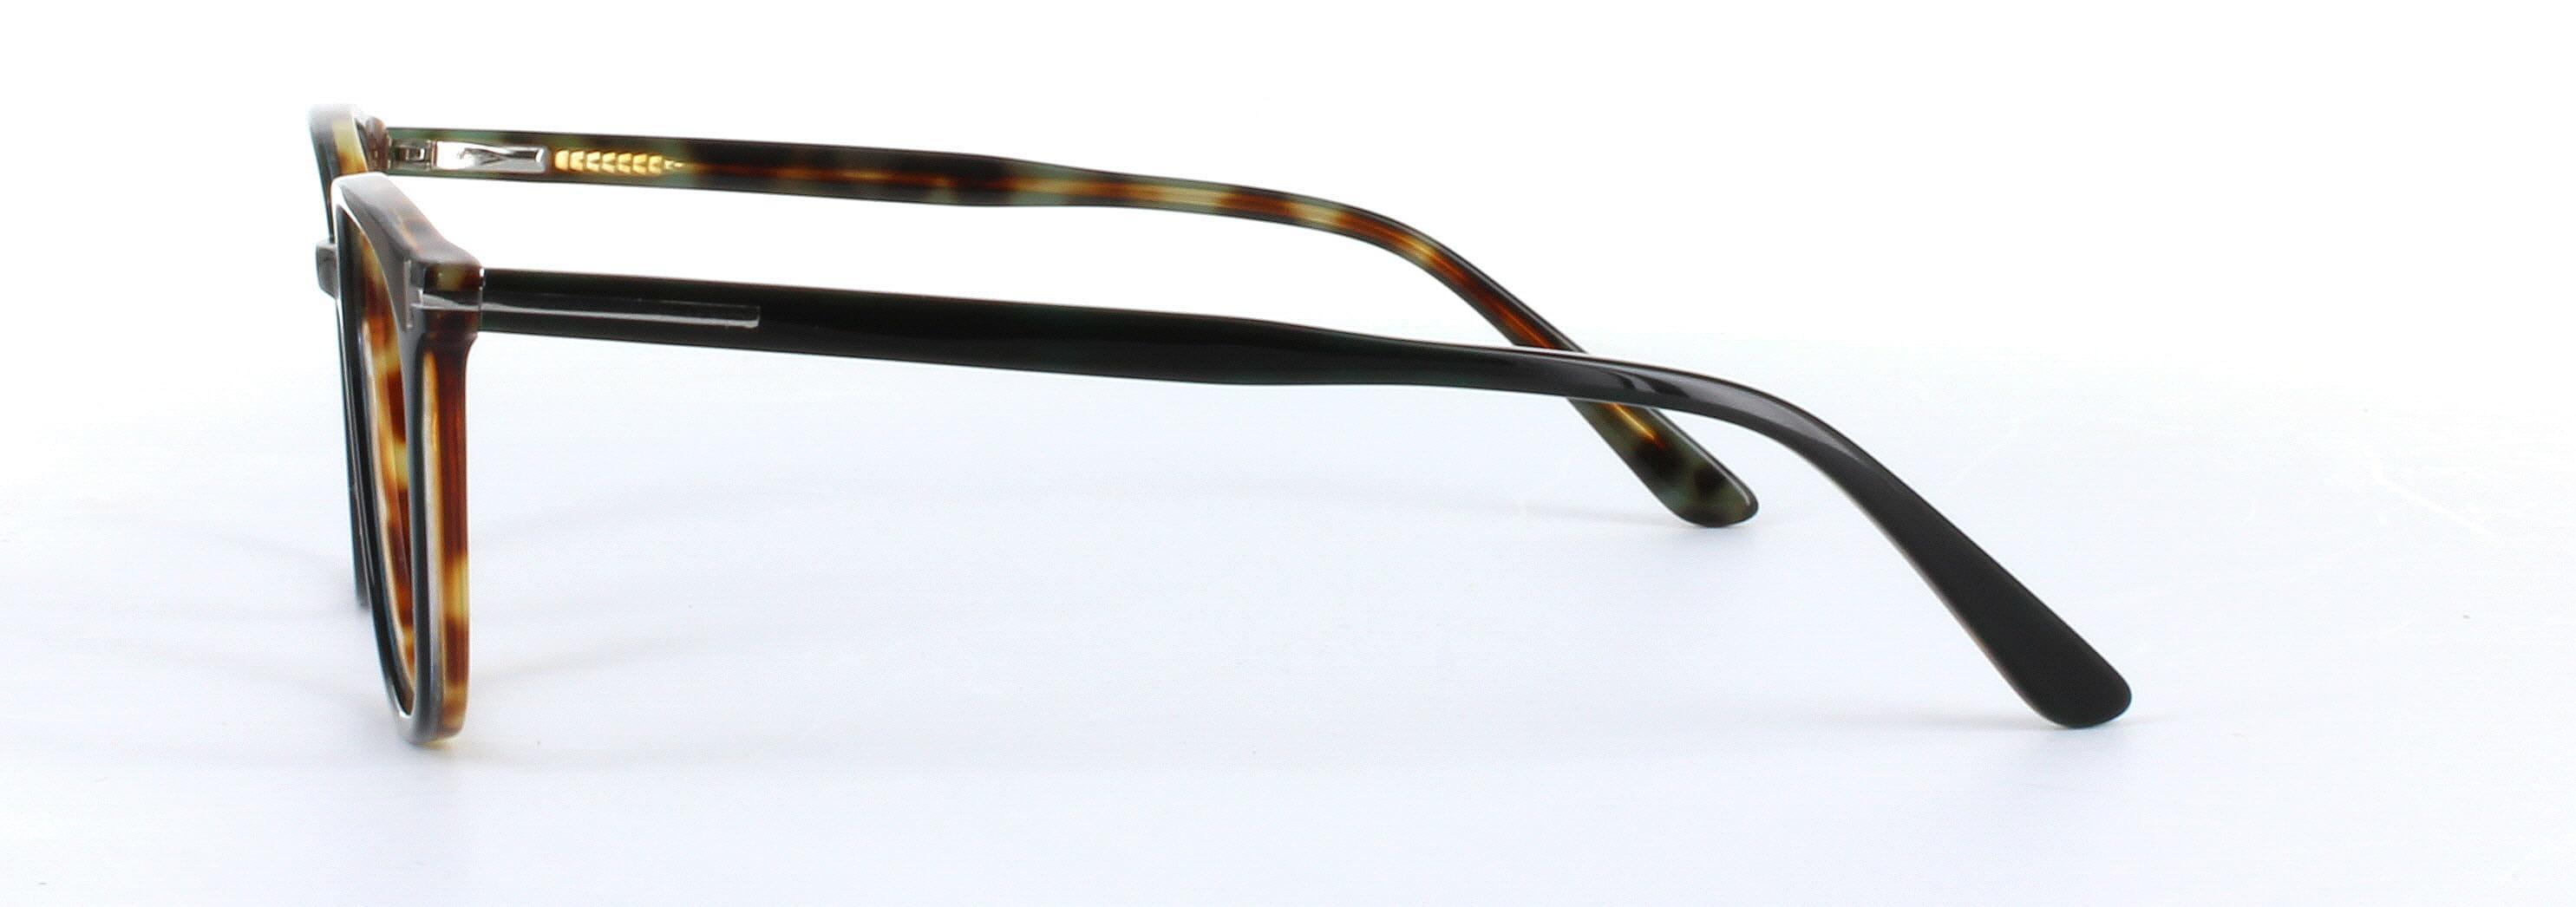 Hazar Dark Brown Full Rim Oval Acetate Glasses - Image View 2